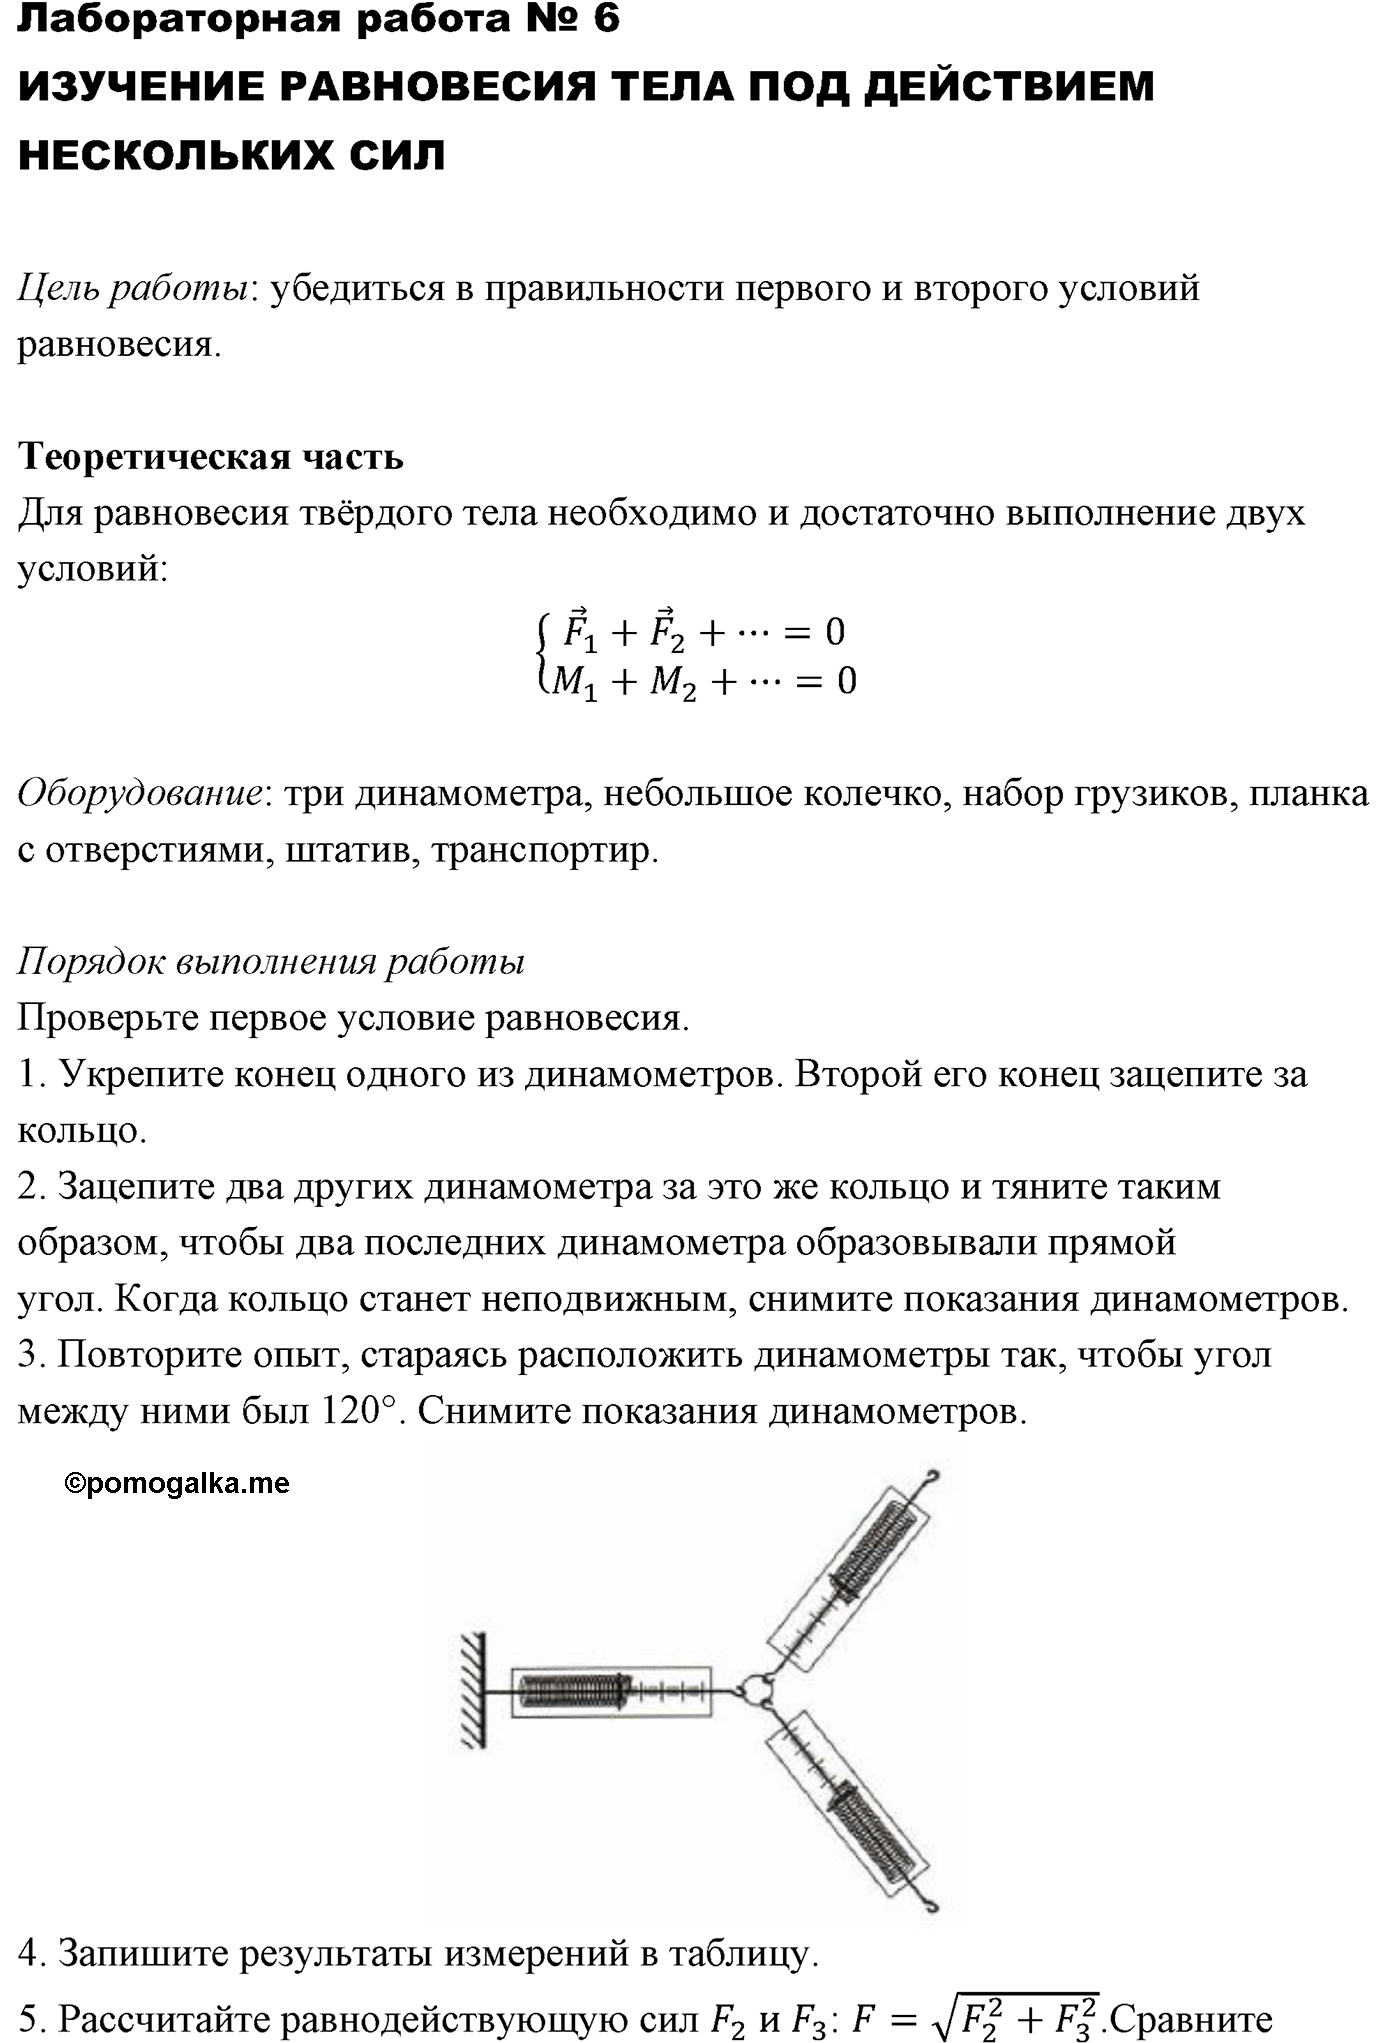 лабораторная работа №6 физика 10 класс Микишев